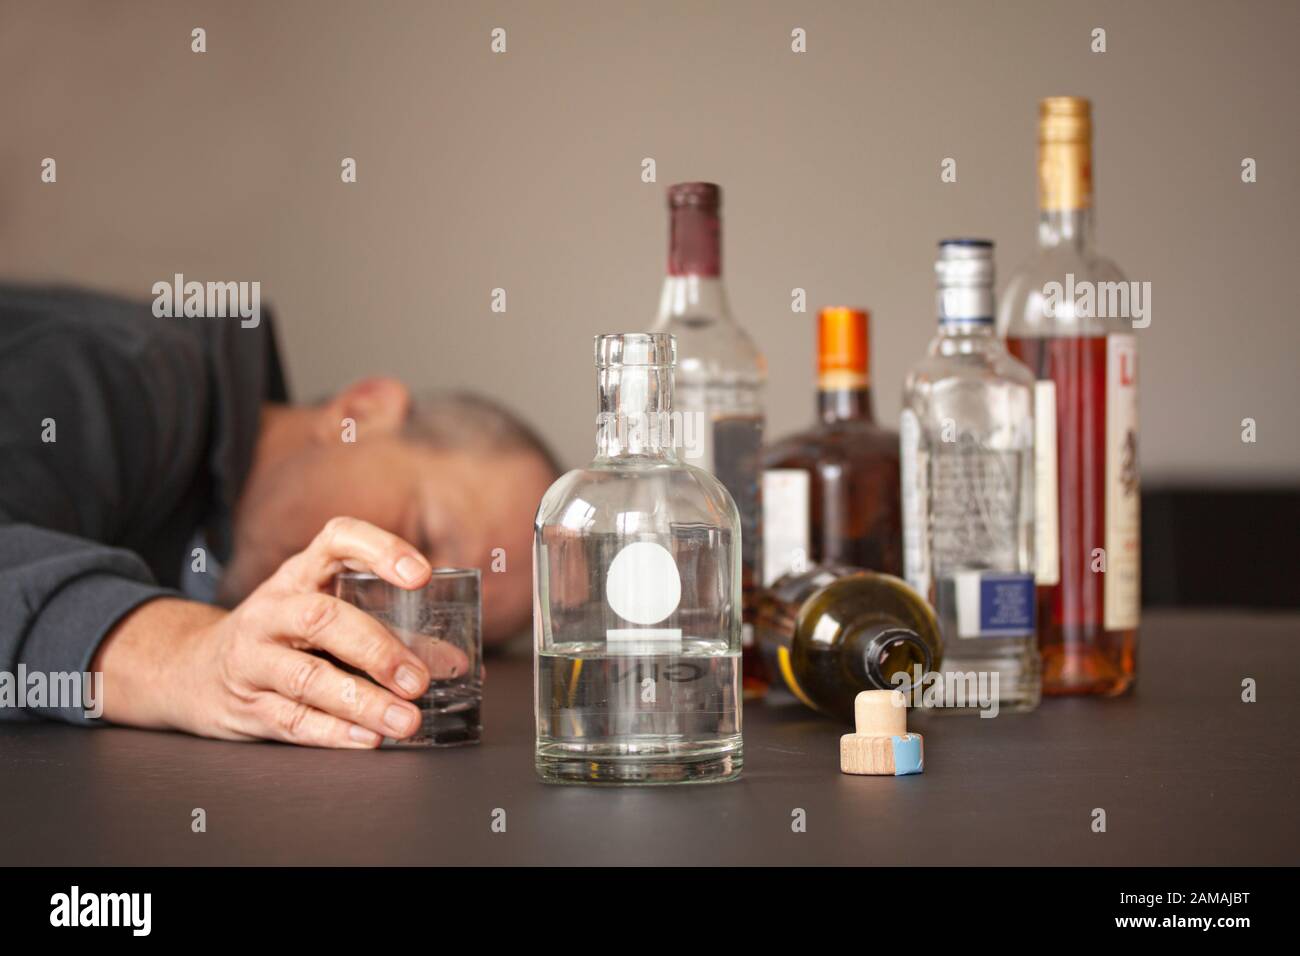 Алкогольного труда. Алкоголизм. Люди с алкогольной зависимостью. Злоупотребление алкоголем.